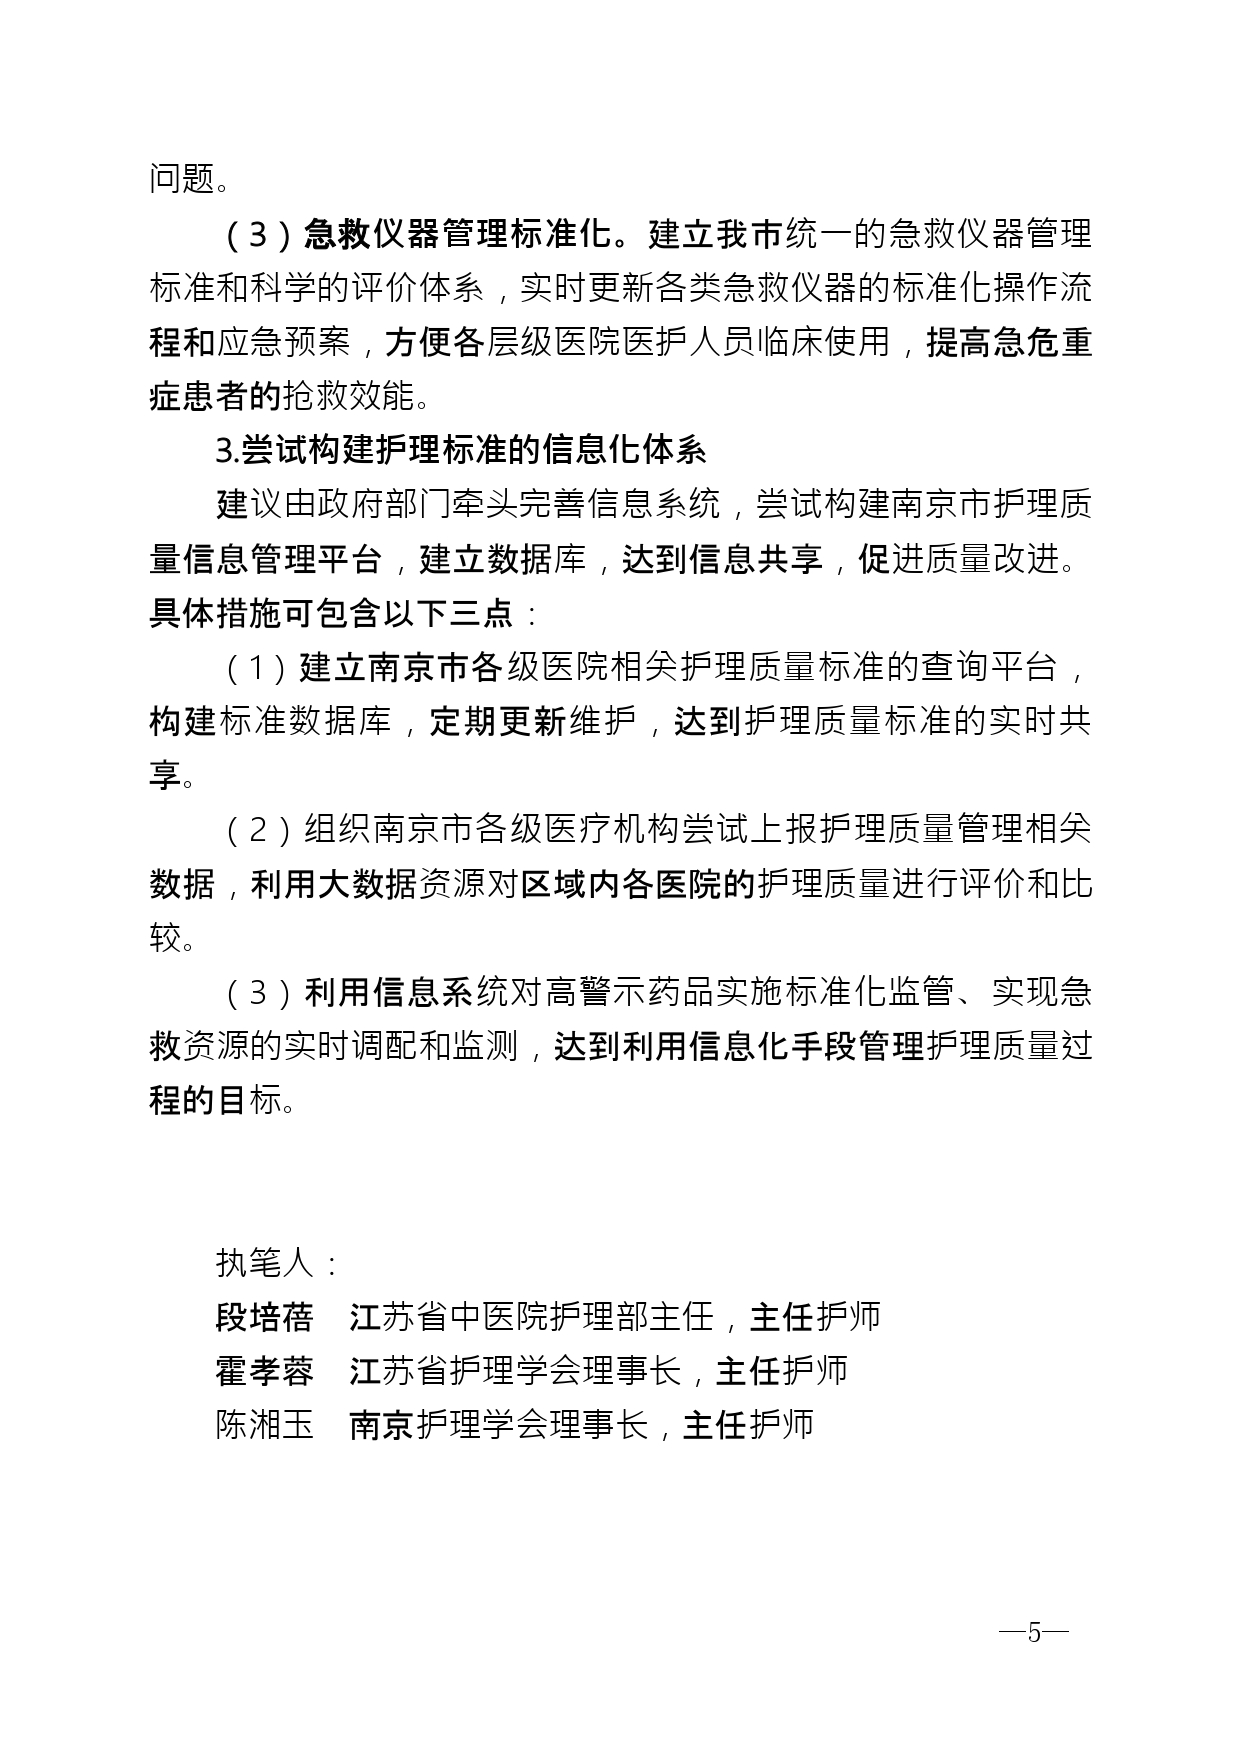 2021年第2期（关于构建南京地区护理体系的建议）_page-0005.jpg